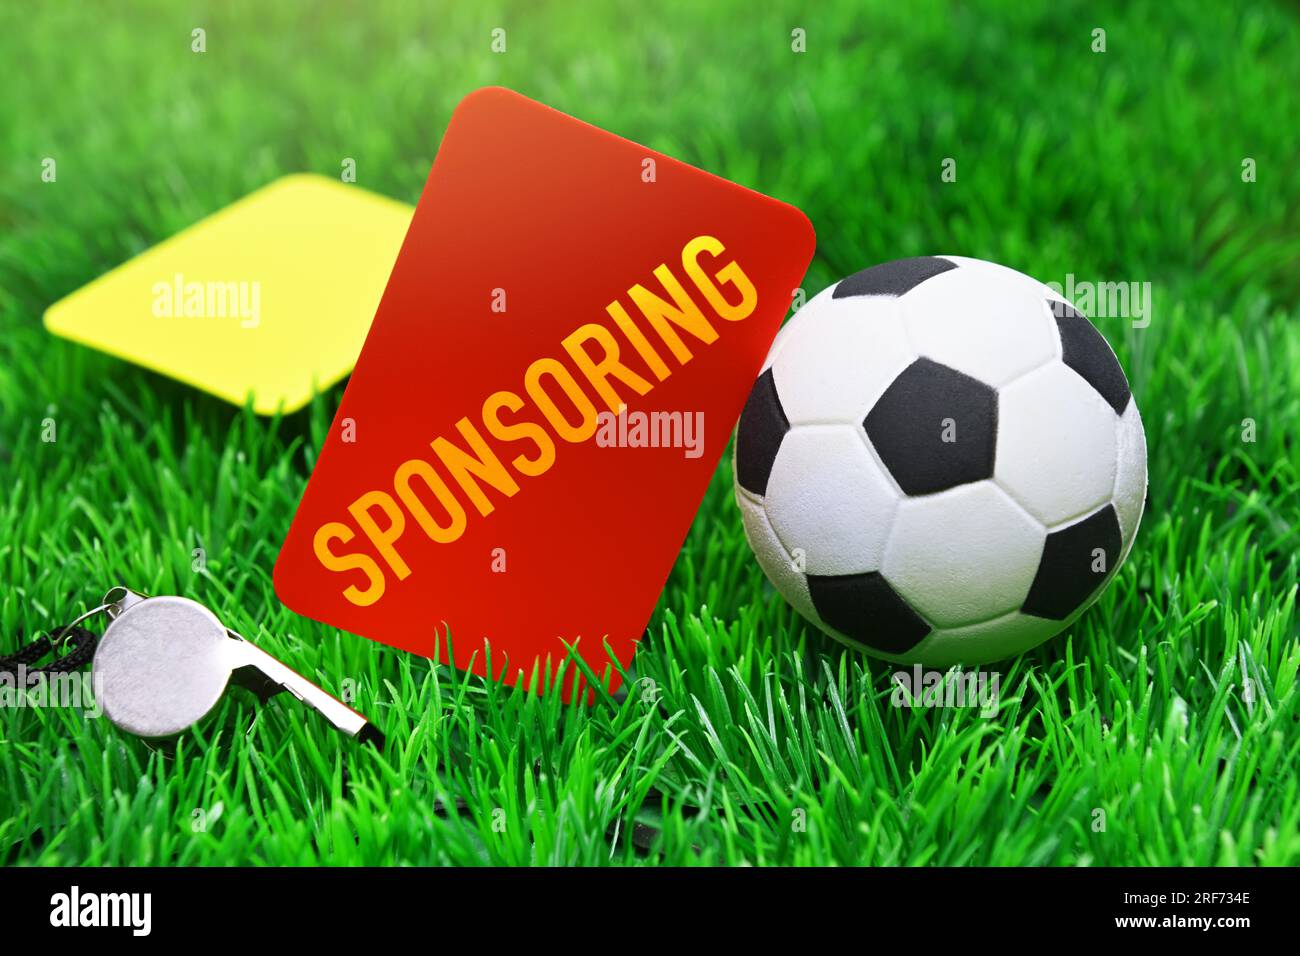 FOTOMONTAGE, Rote Karte mit Aufschrift sponsoring neben Fußball auf Fußballrasen, Symbolfoto Kündigung von Sponsoring-Verträgen Banque D'Images